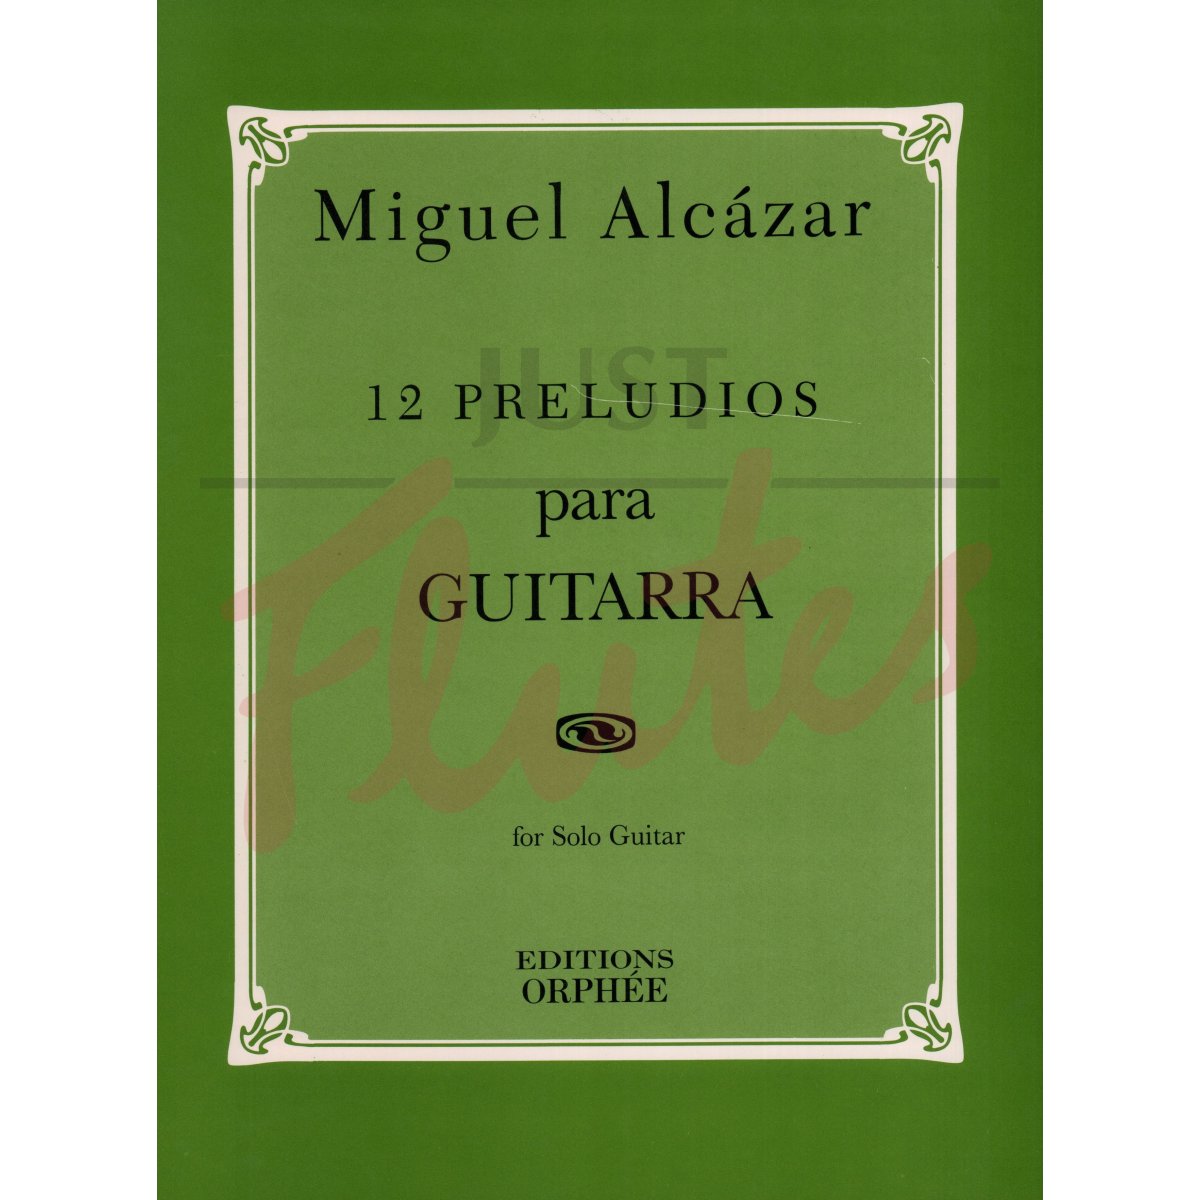 12 Preludios for Guitar